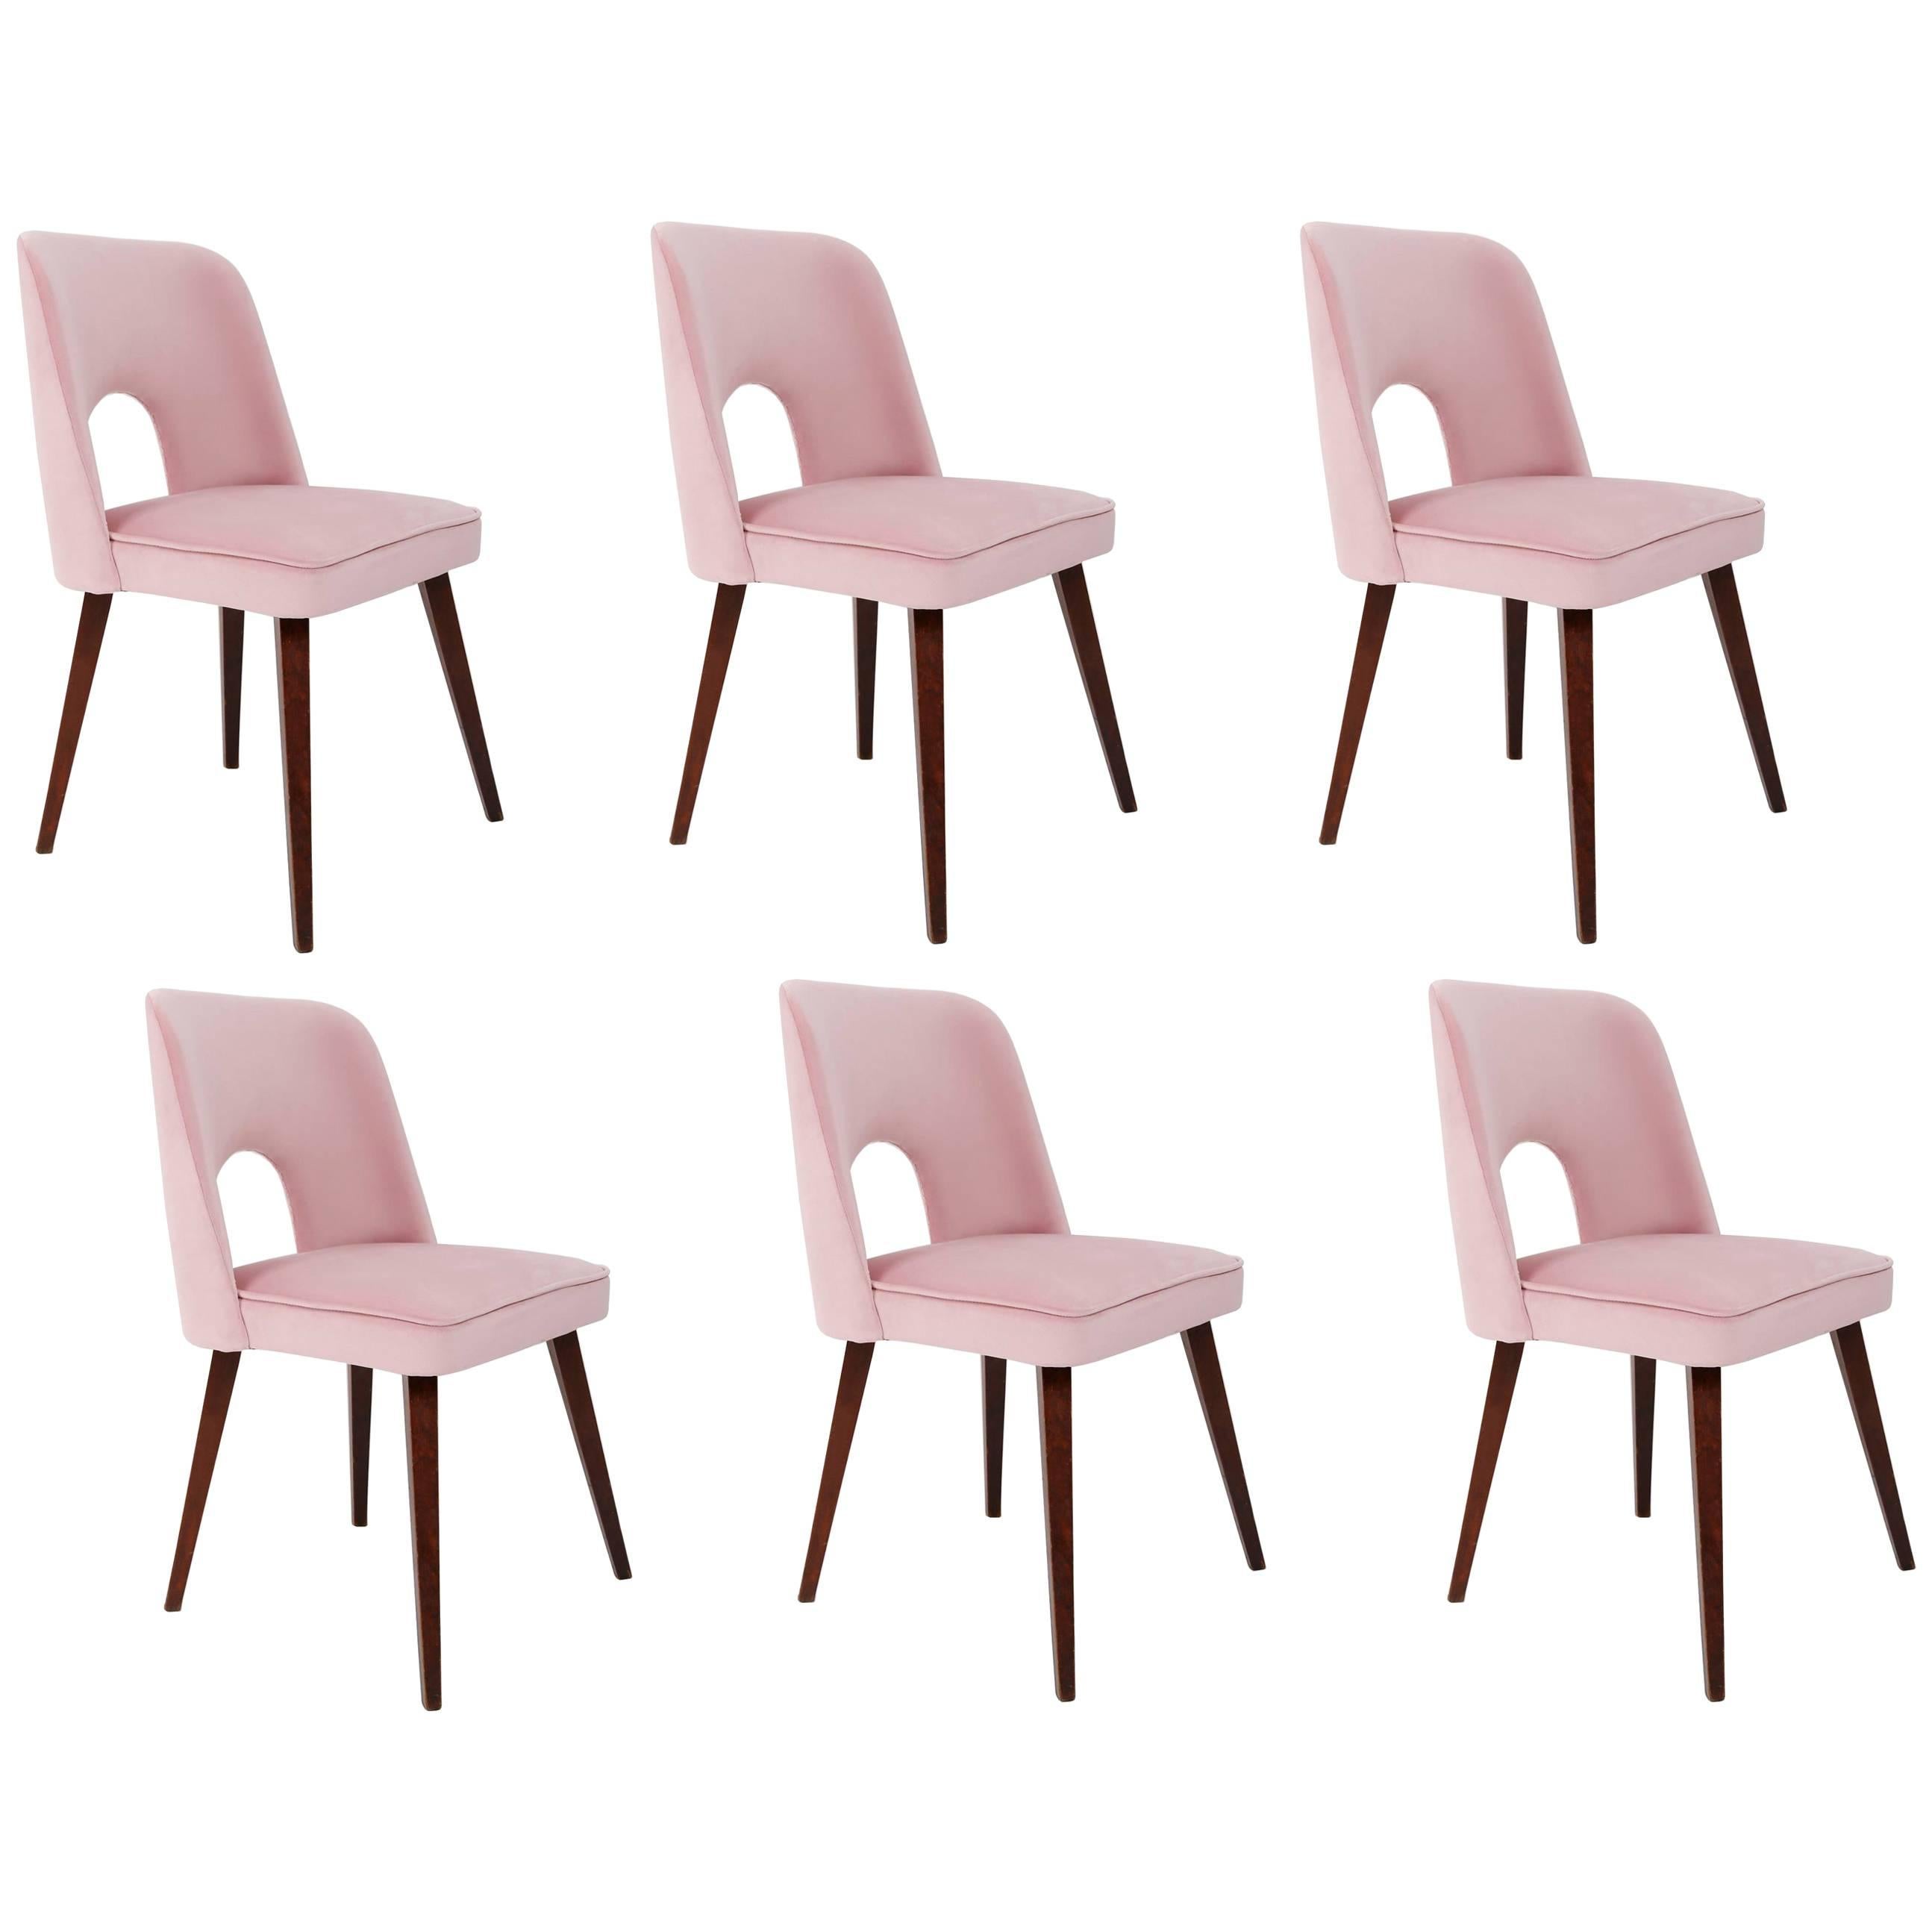 Ensemble de six chaises rose pâle « Shell », années 1960